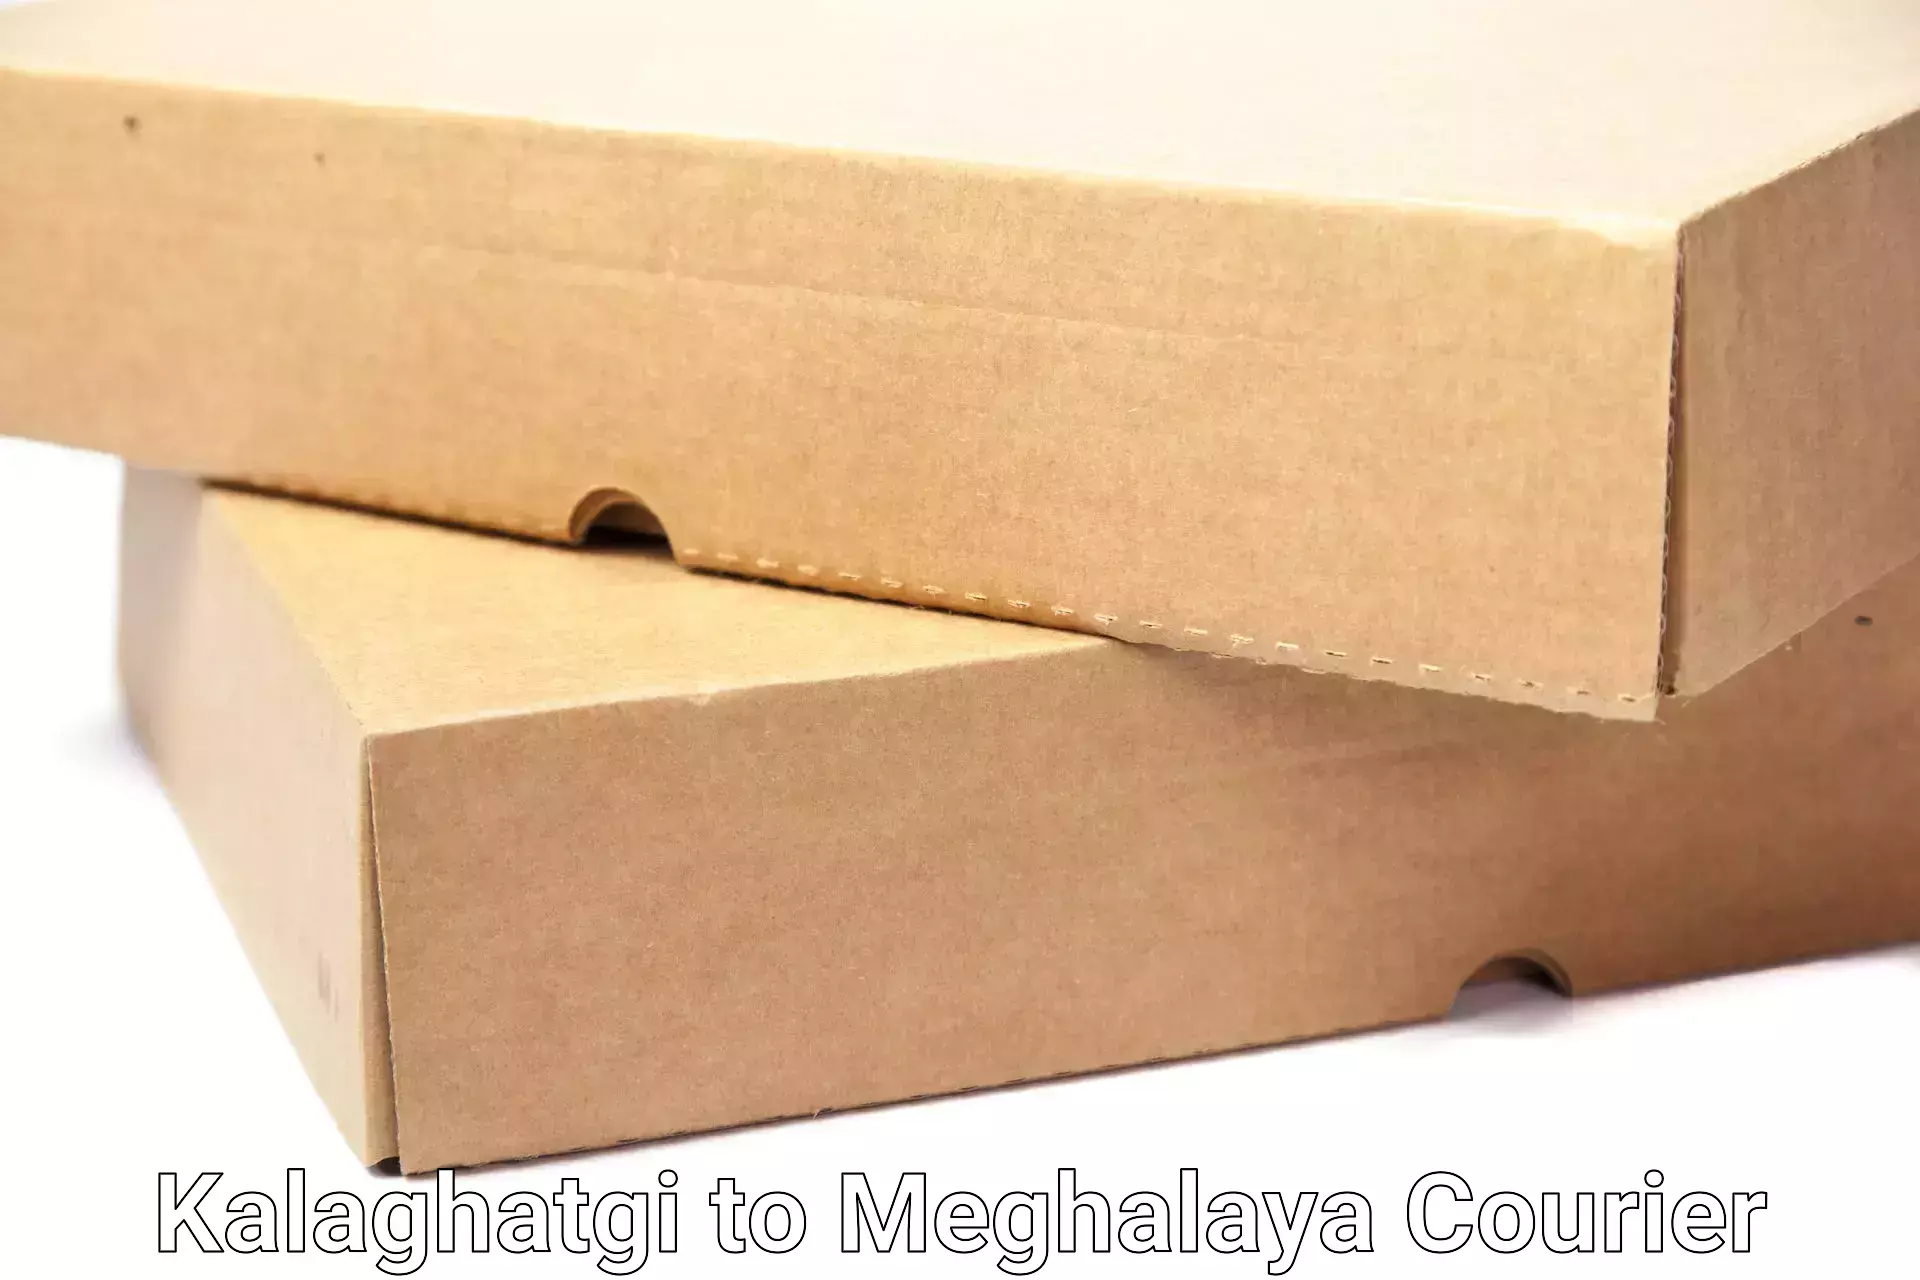 Easy furniture transport in Kalaghatgi to Meghalaya